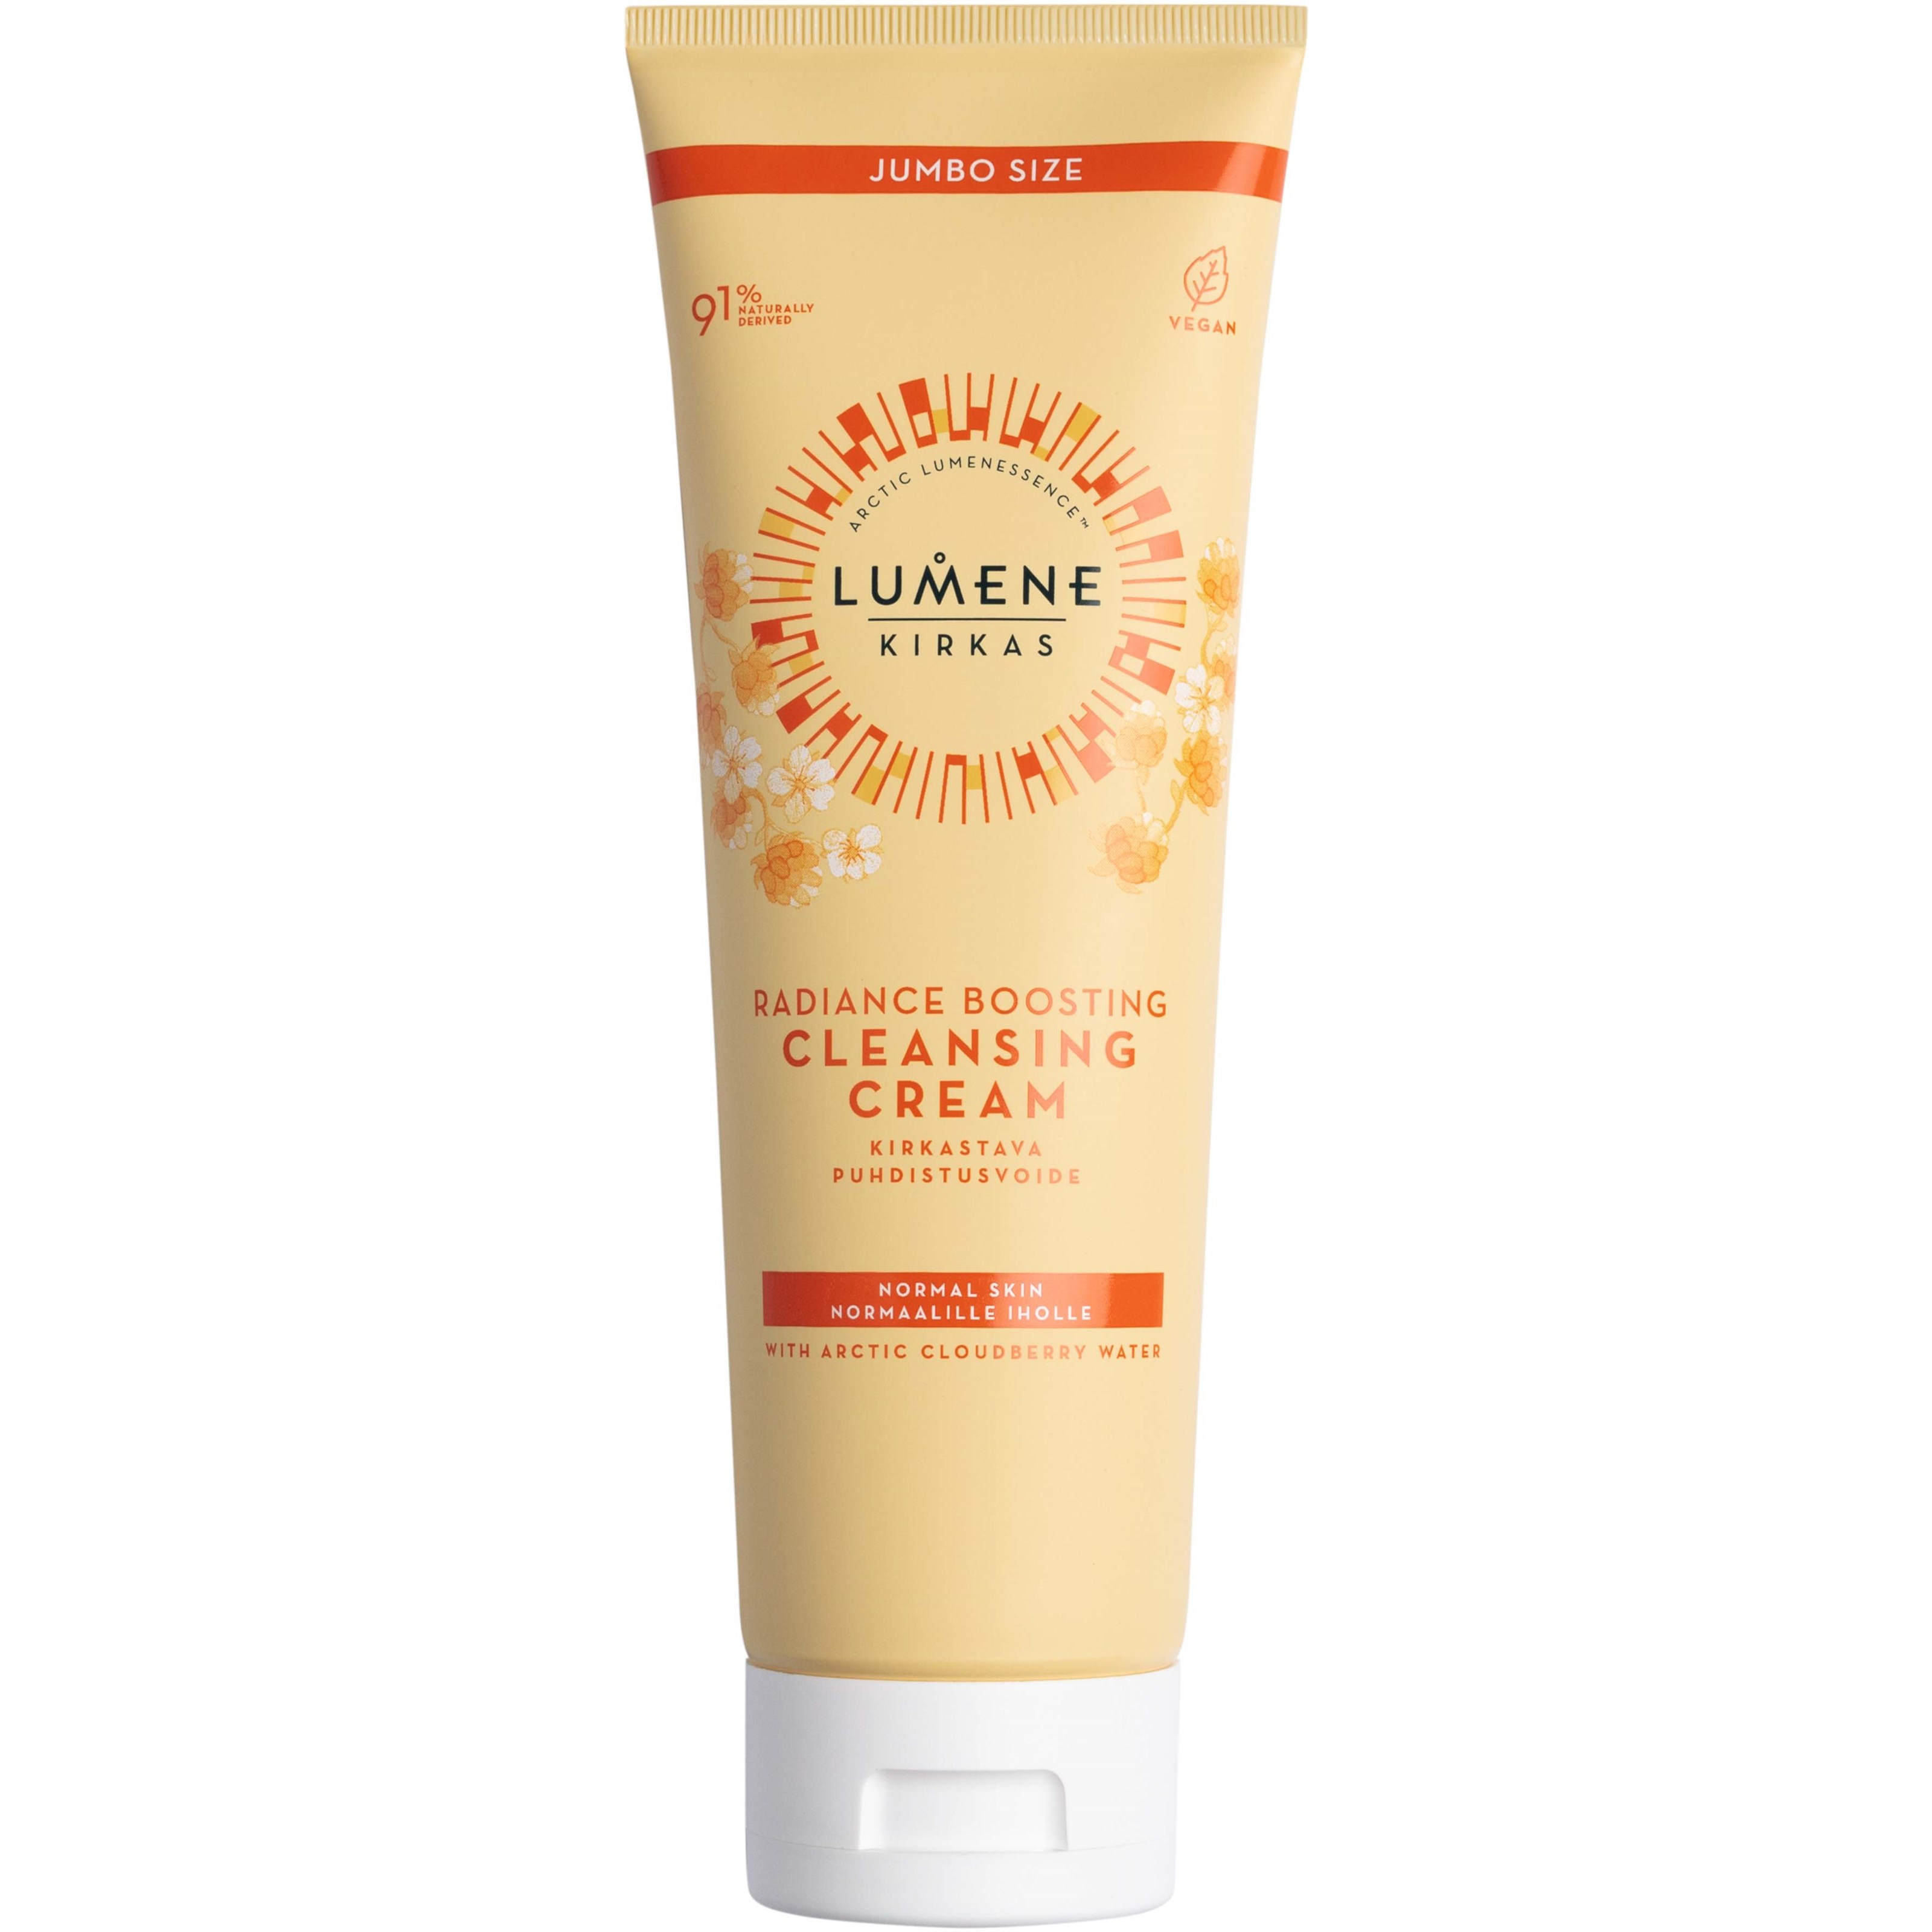 Bilde av Lumene Radiance Boosting Radiance Boosting Cleansing Cream Jumbo Size